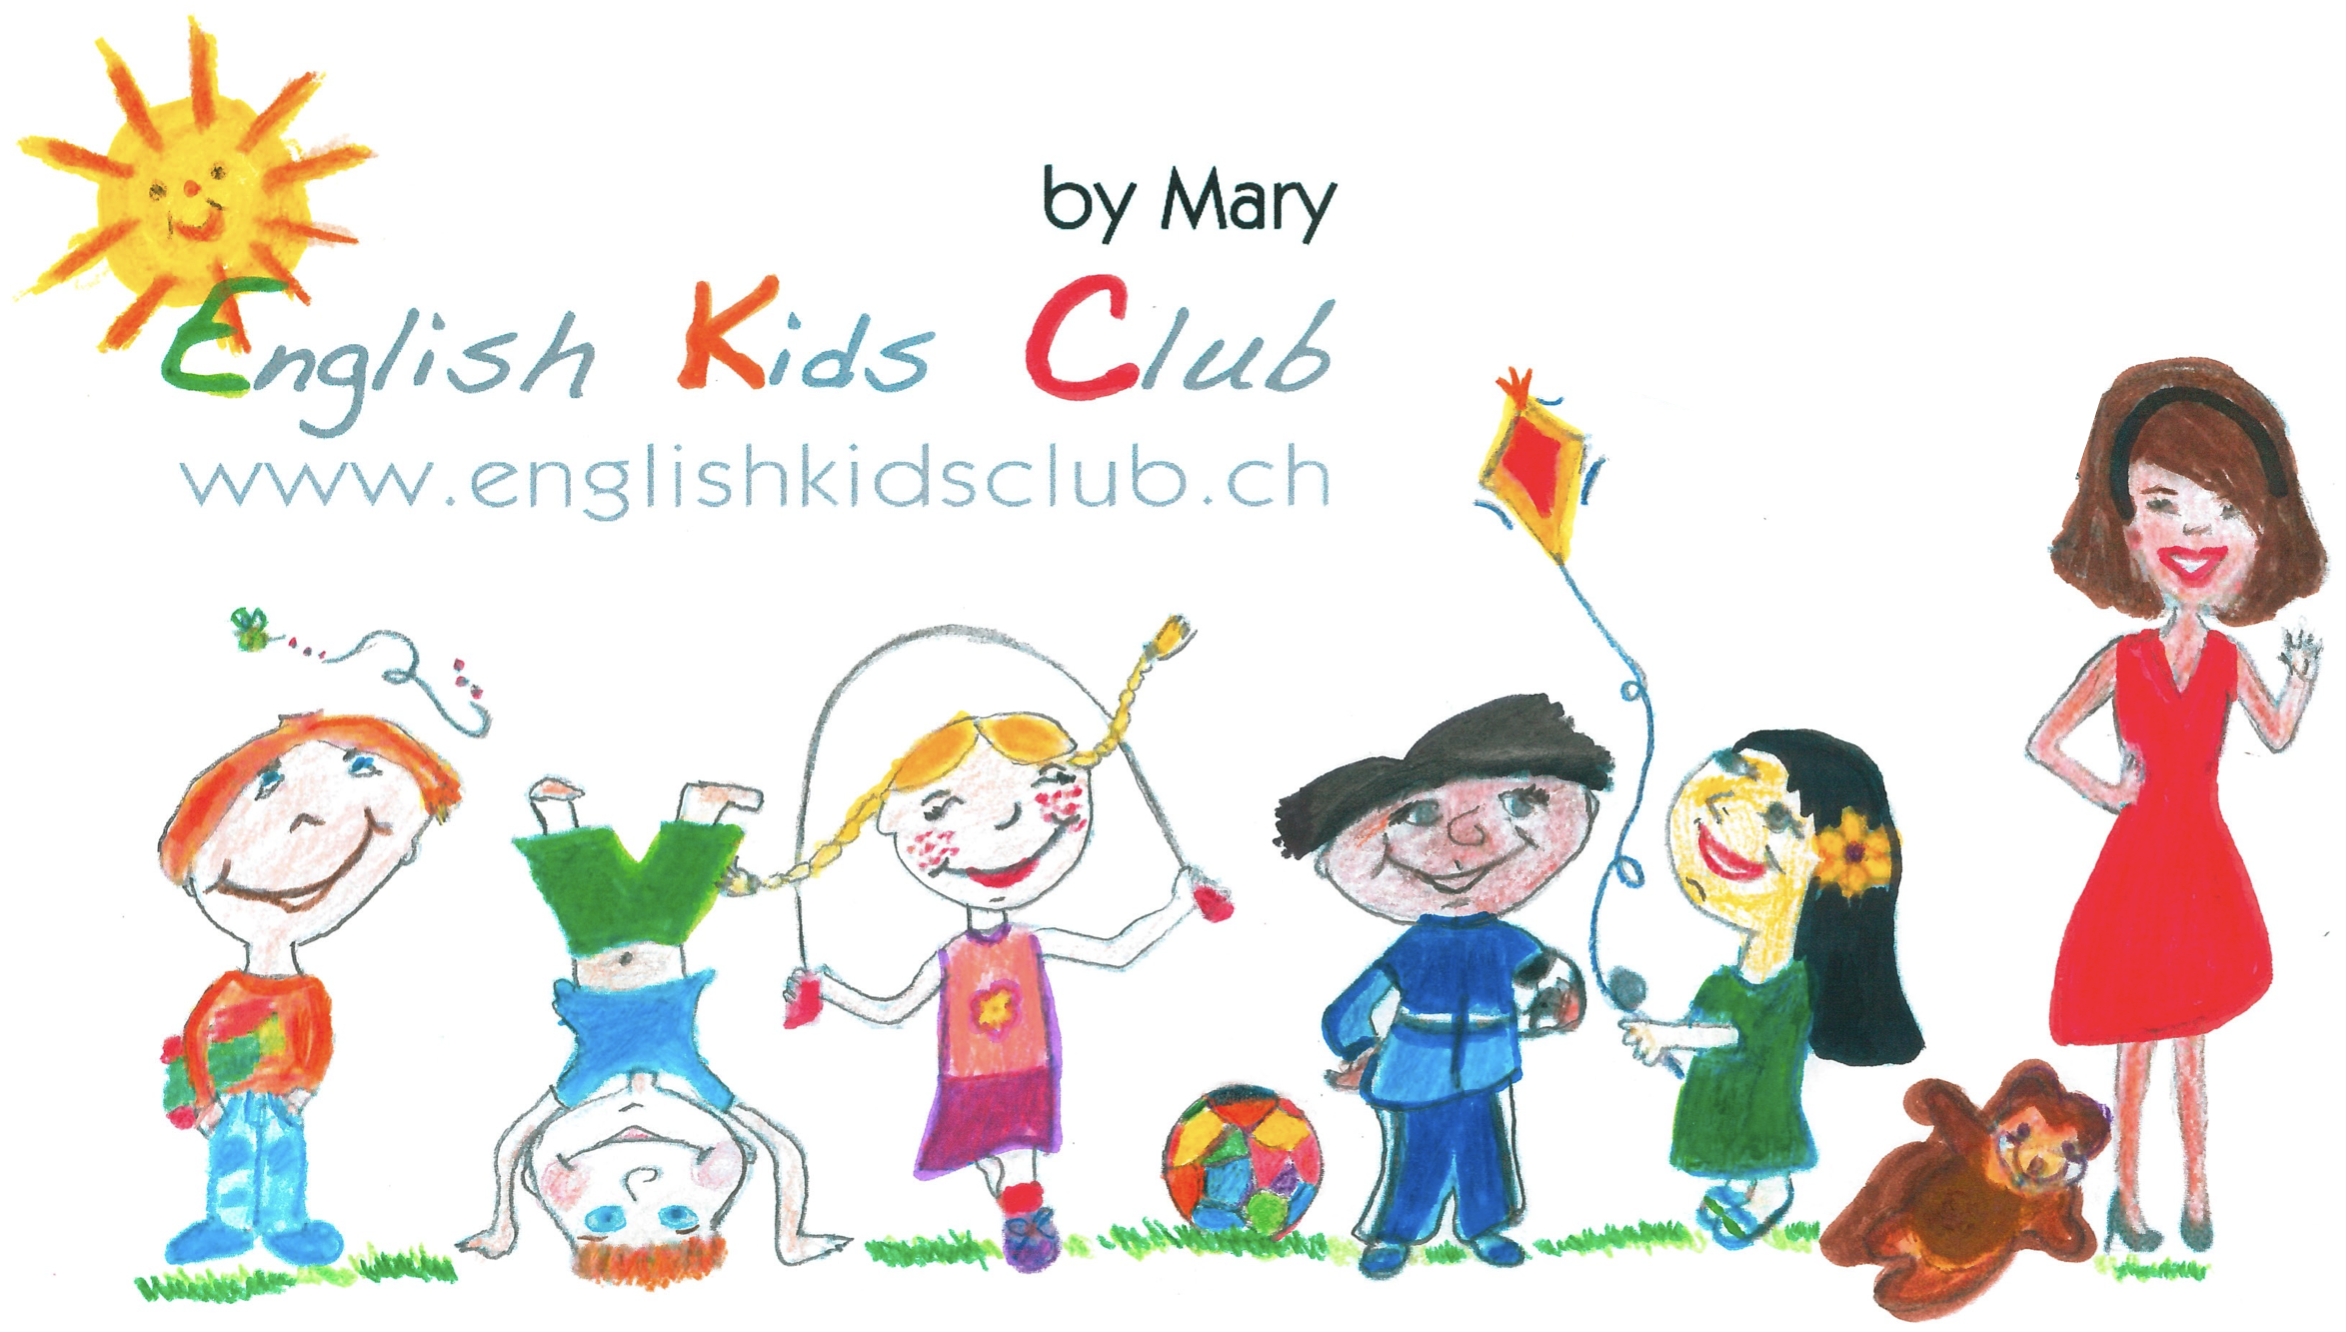 English Kids Club by Mary